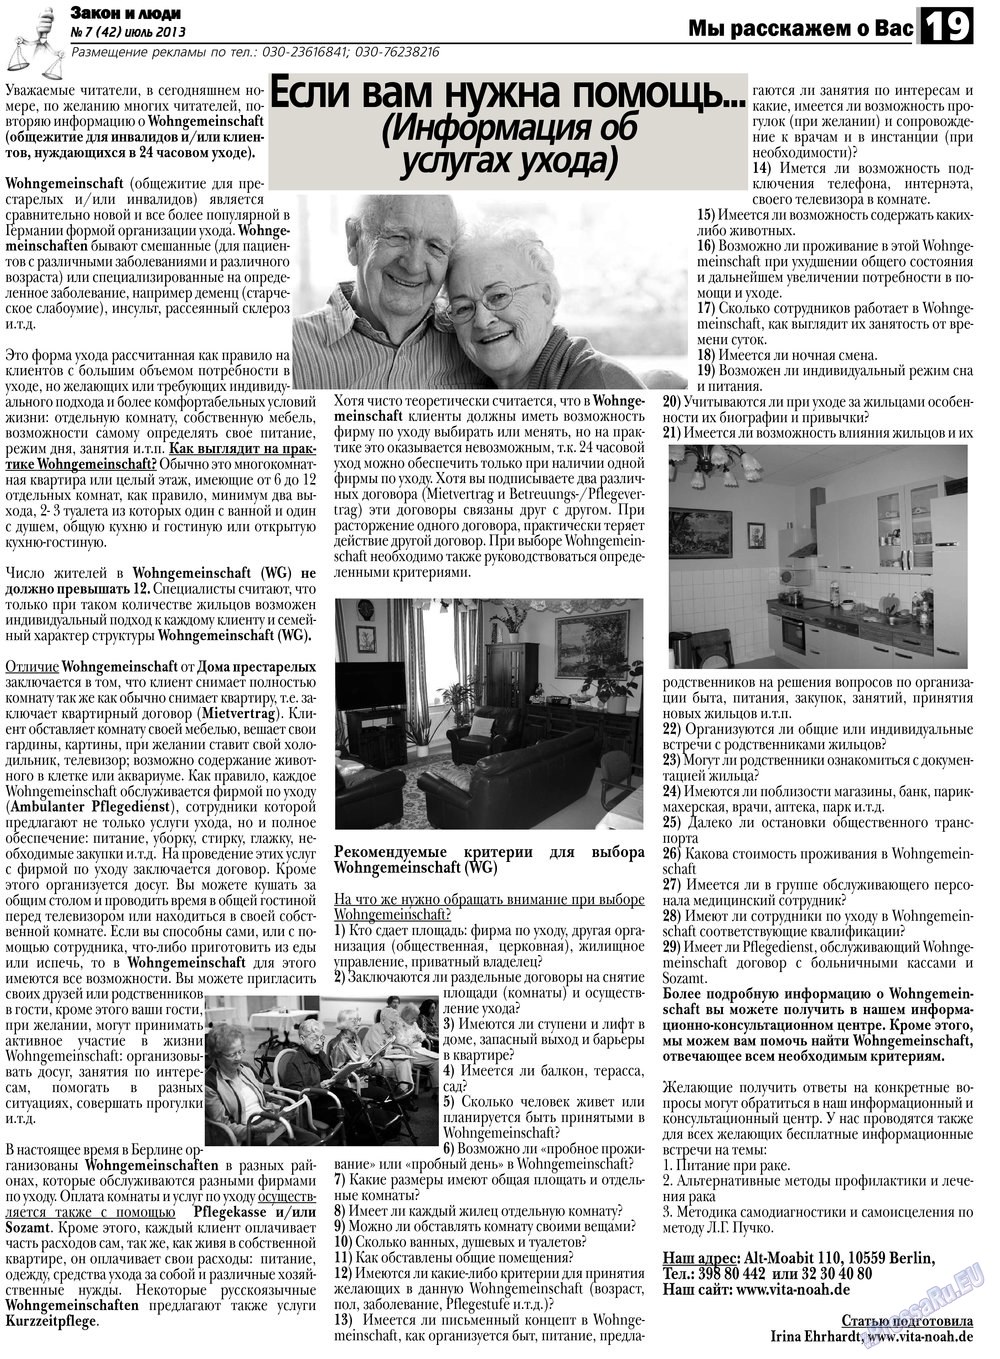 Закон и люди, газета. 2013 №7 стр.19